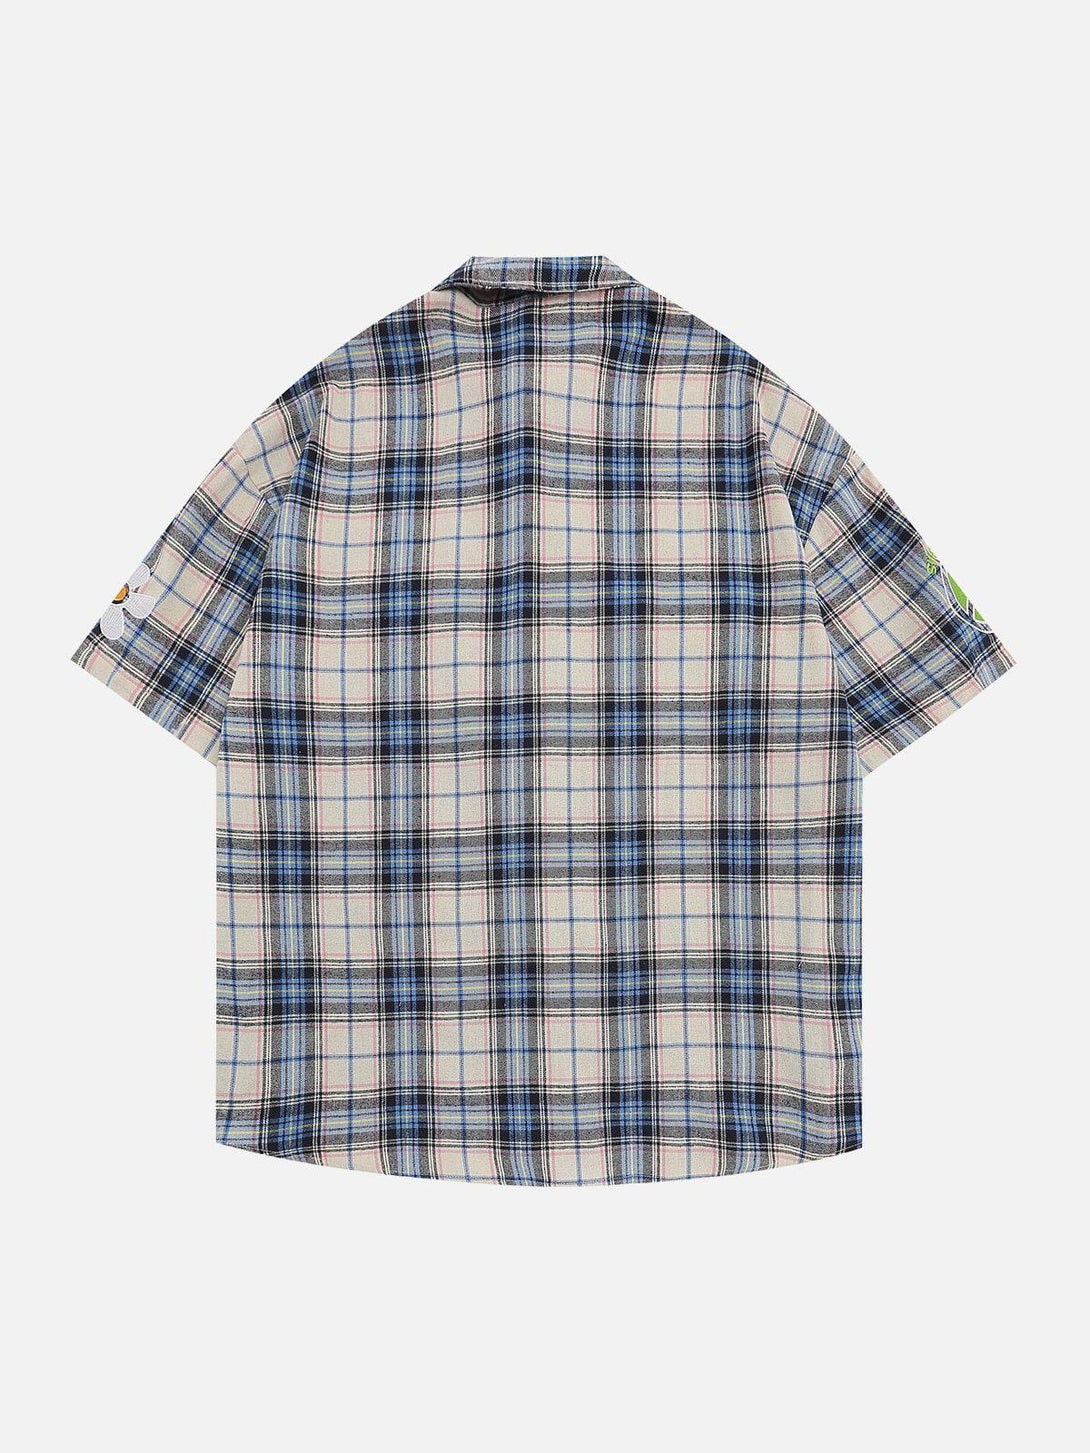 AlanBalen® - Plaid Short Sleeve Shirts AlanBalen